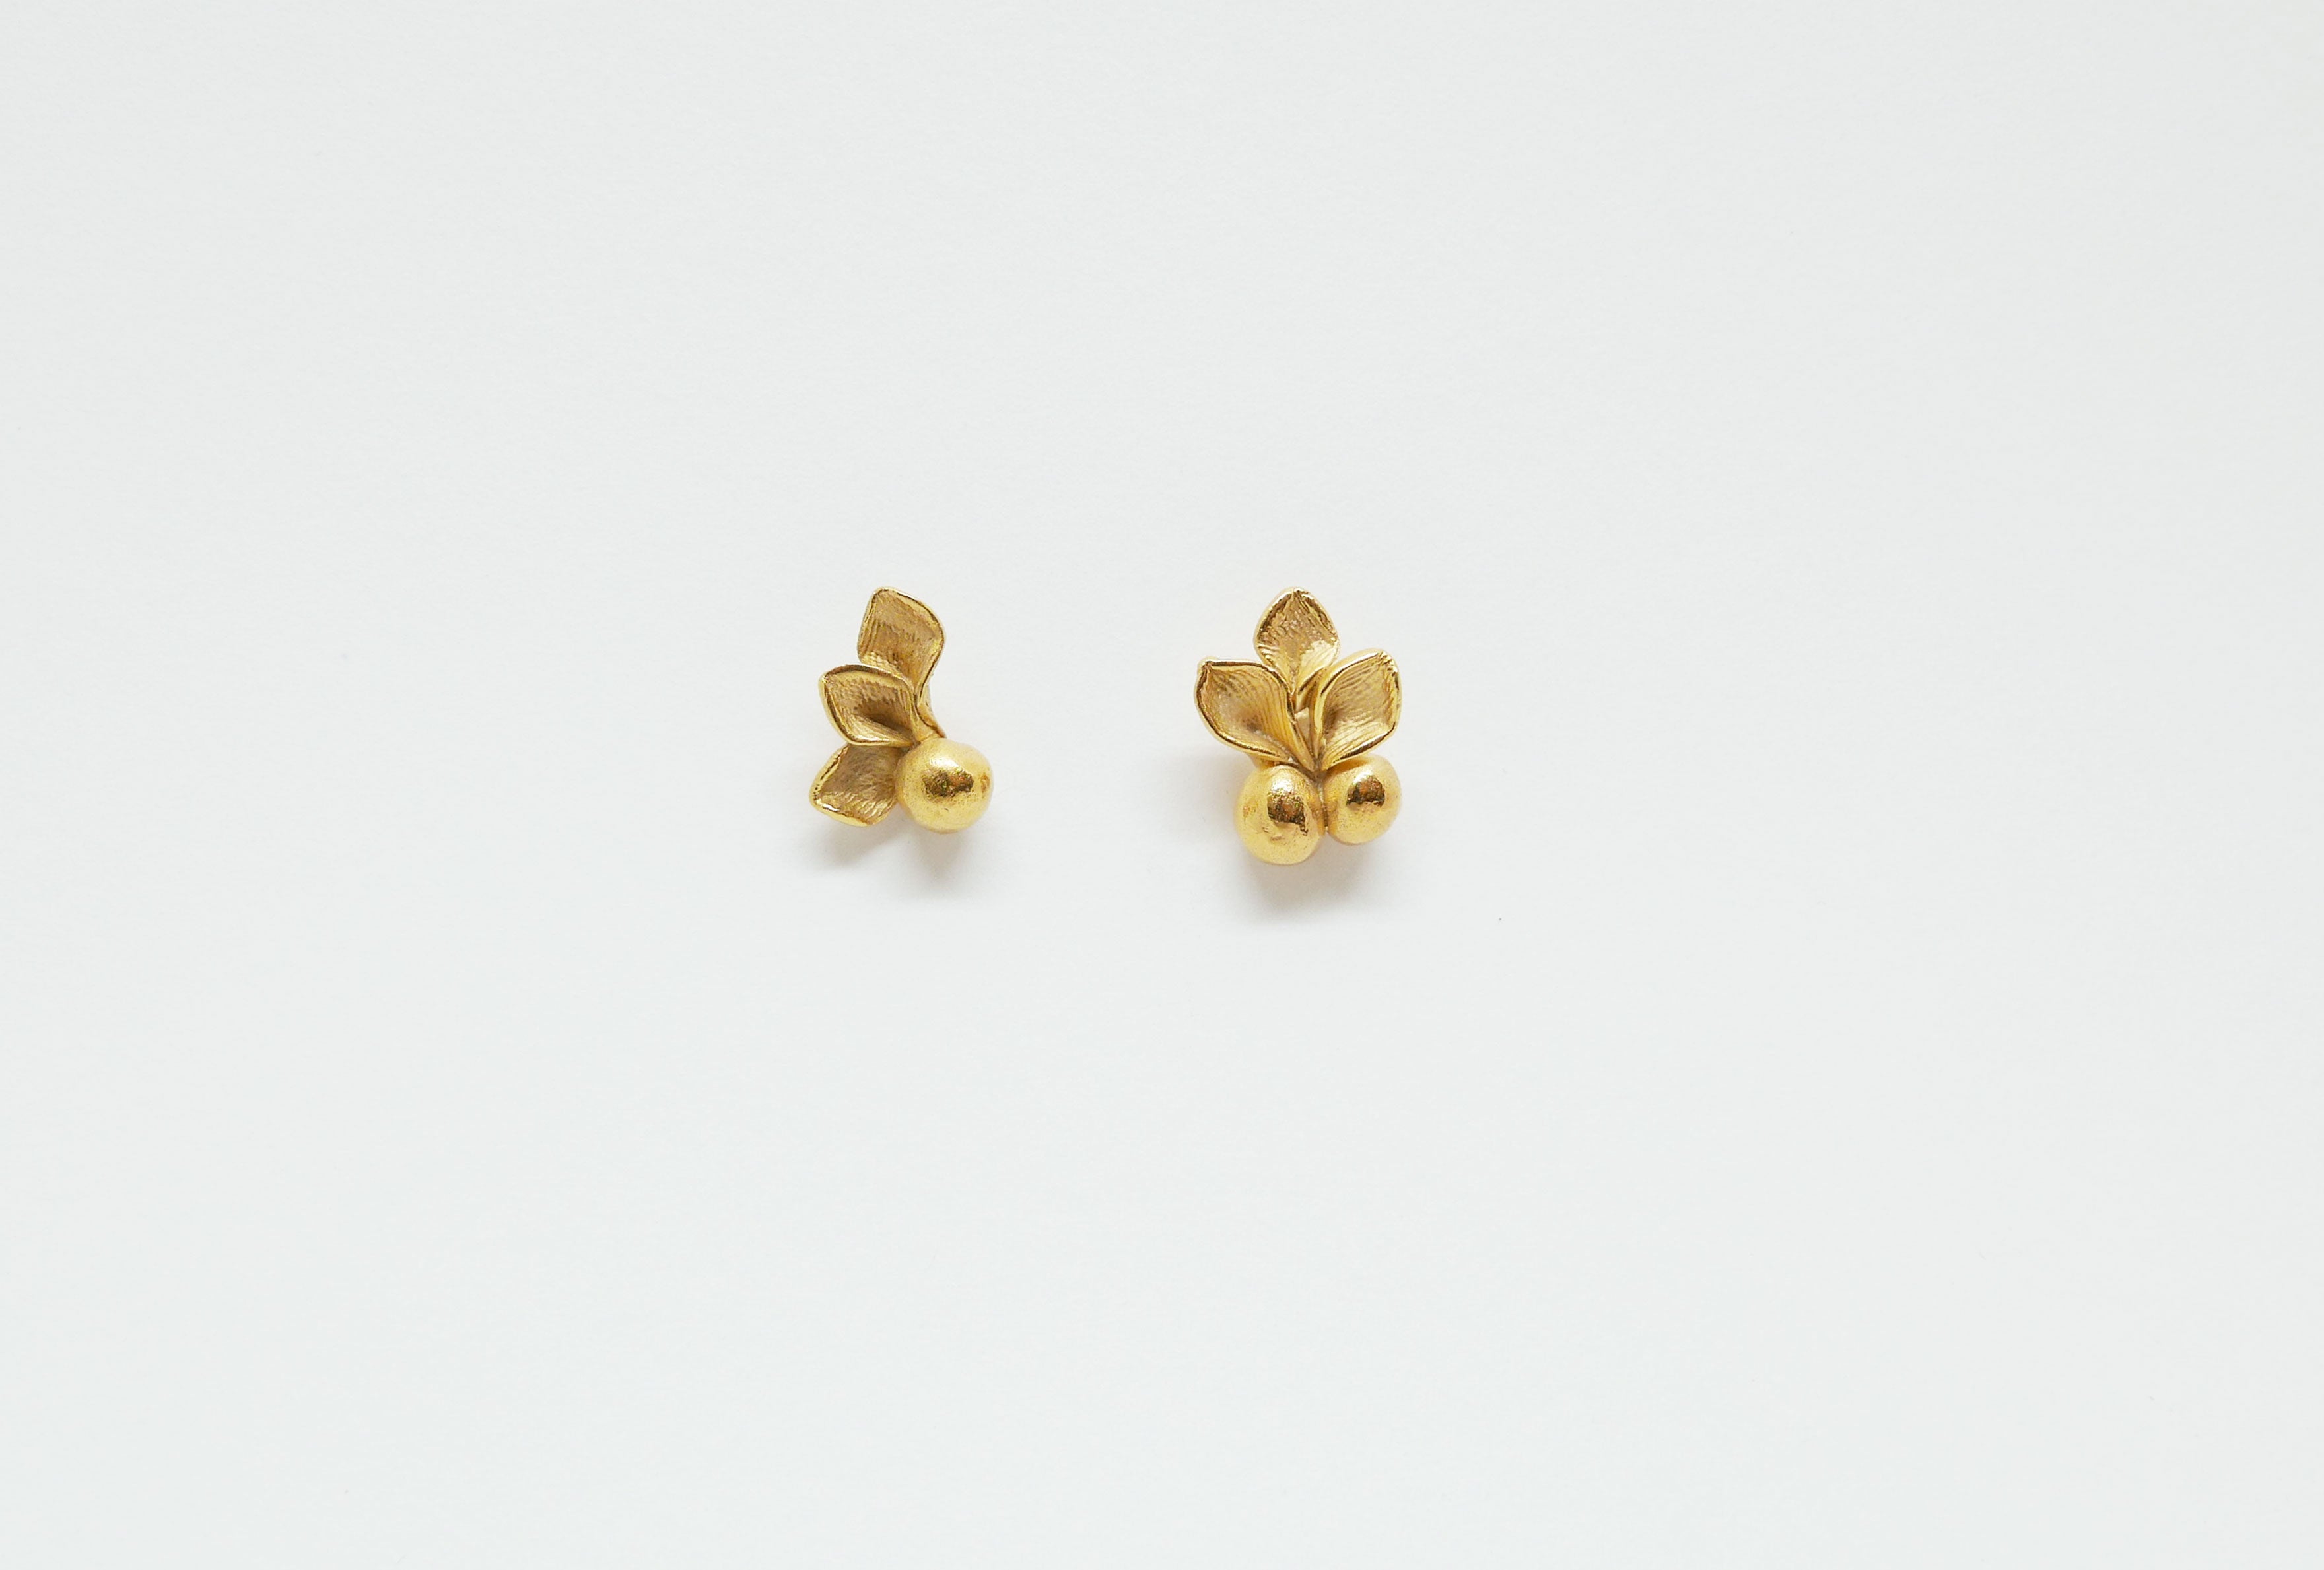 Boucles d'oreille romantique dorées à l'or fin